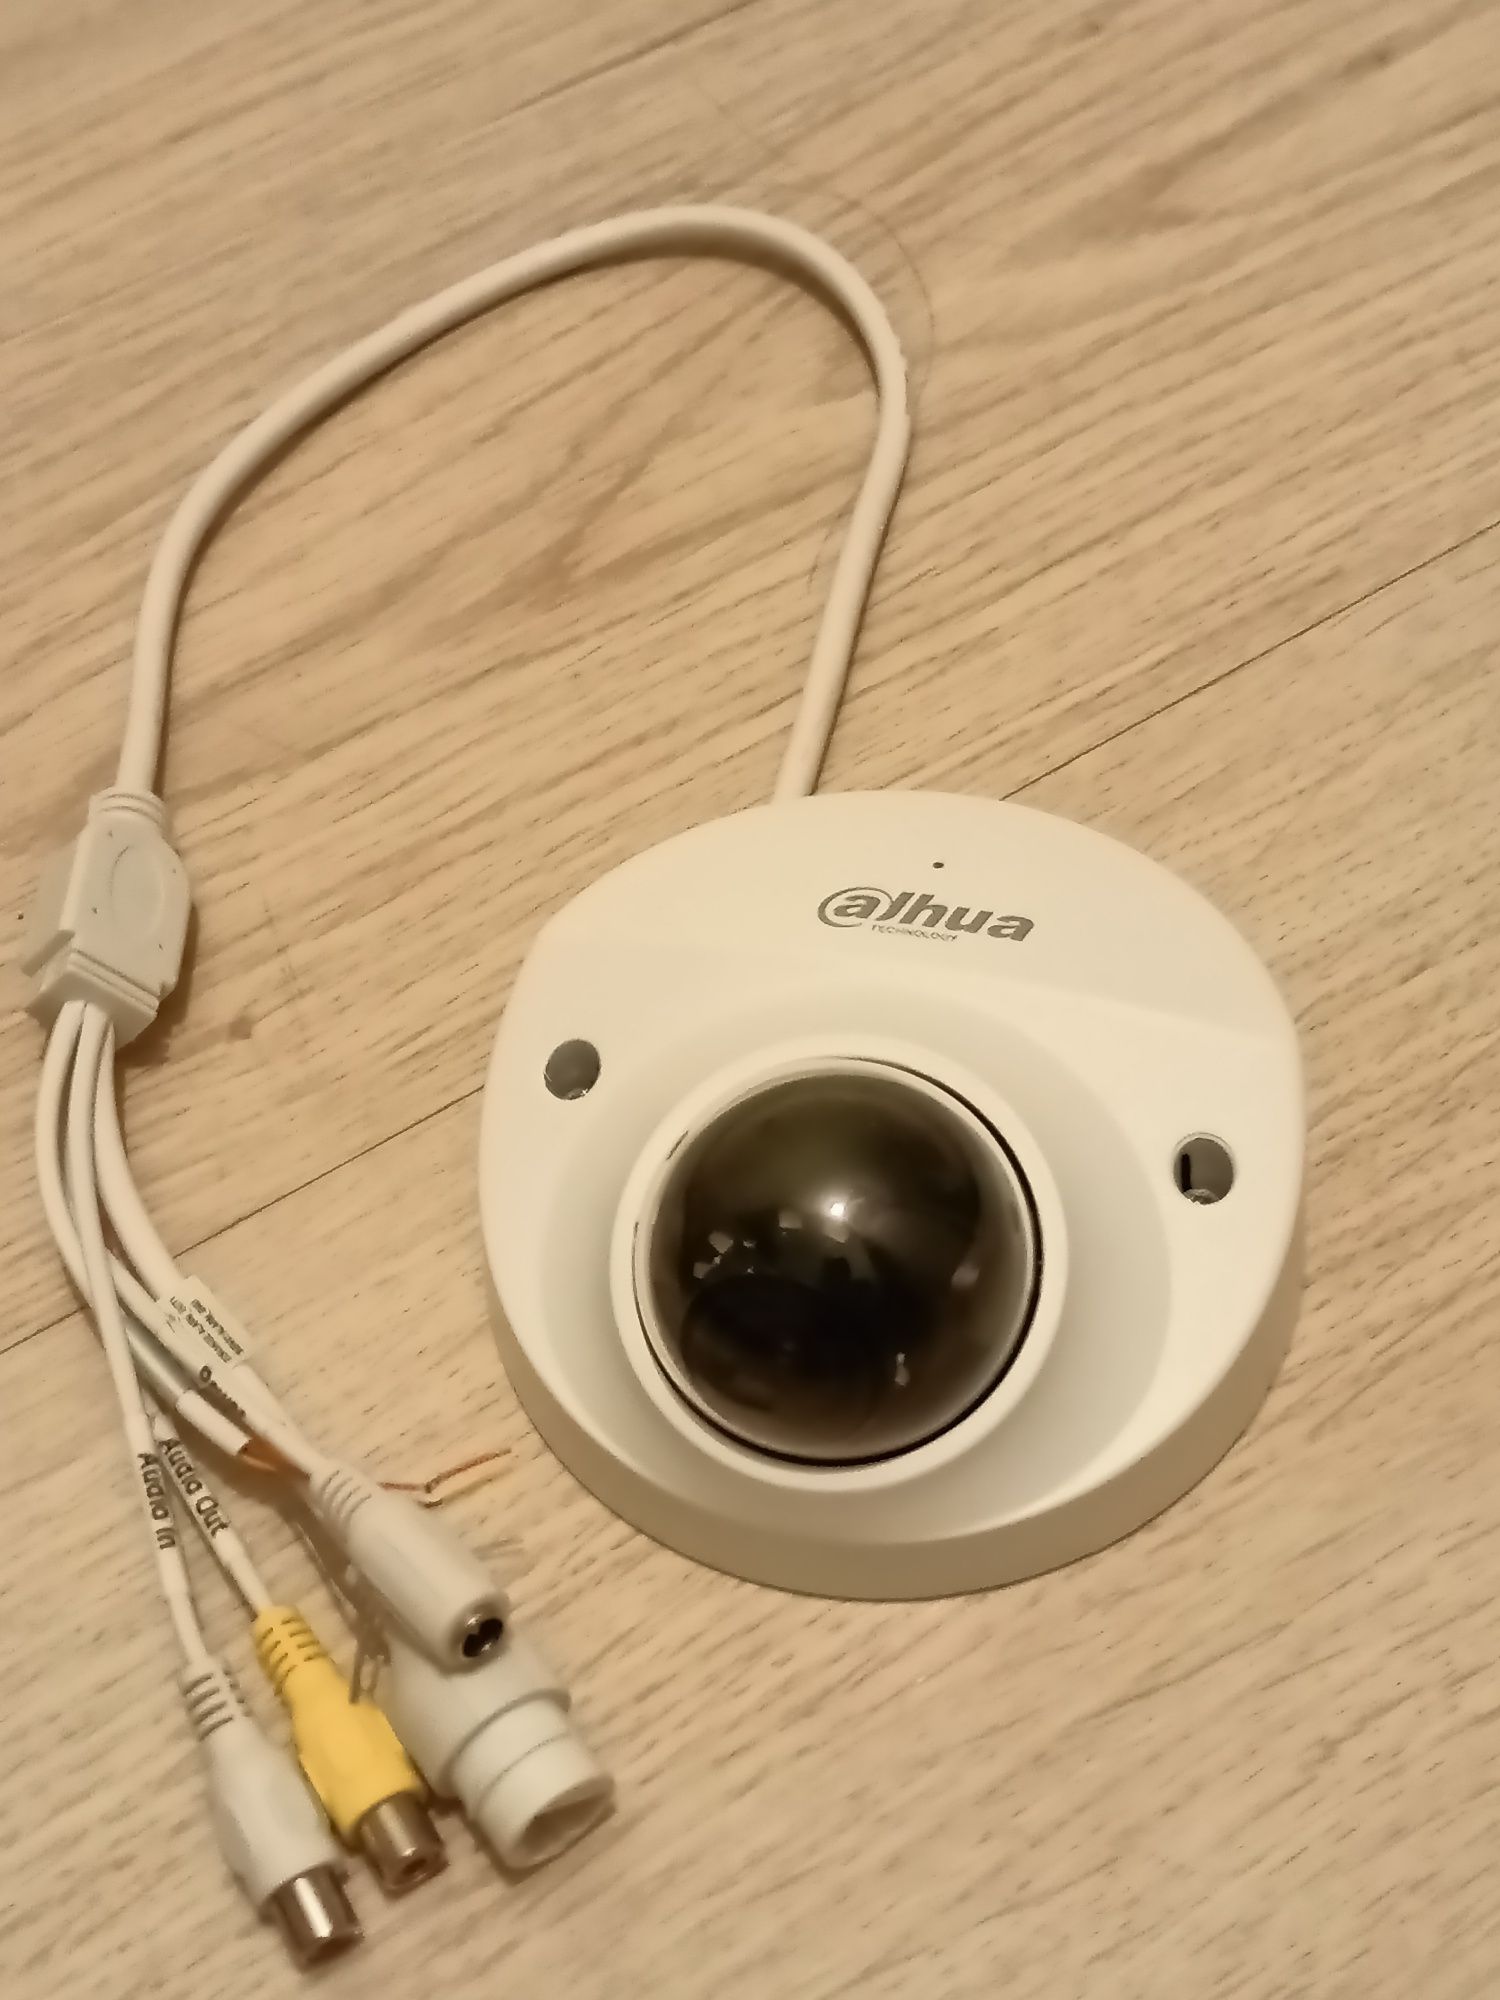 Dahua камера для видеонаблюдения